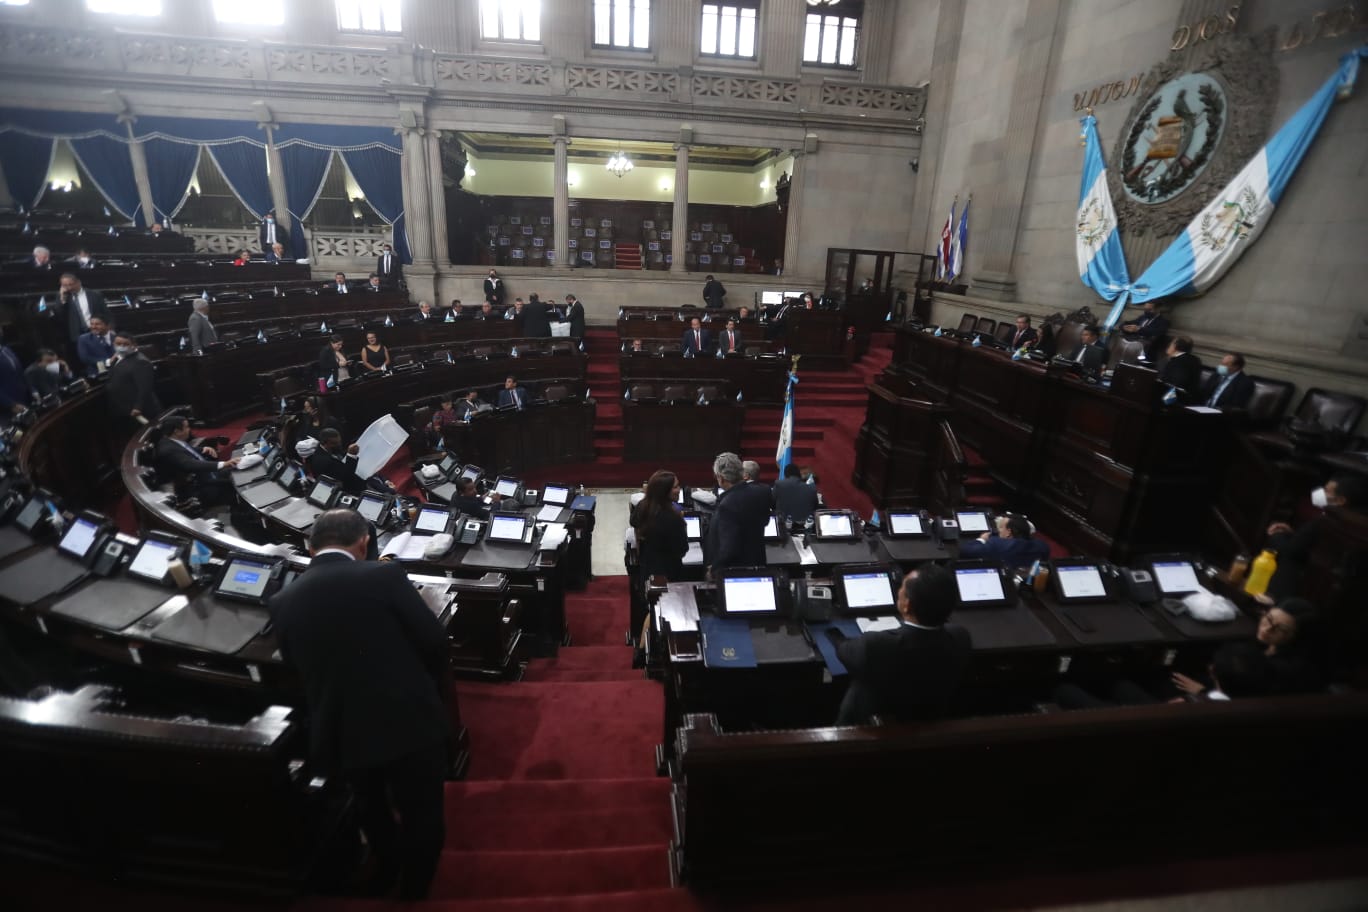 Diputados discuten la iniciativa 6141 que daría vida a la “Ley de Adquisiciones del Estado”. (Foto Prensa Libre: Juan Diego González)